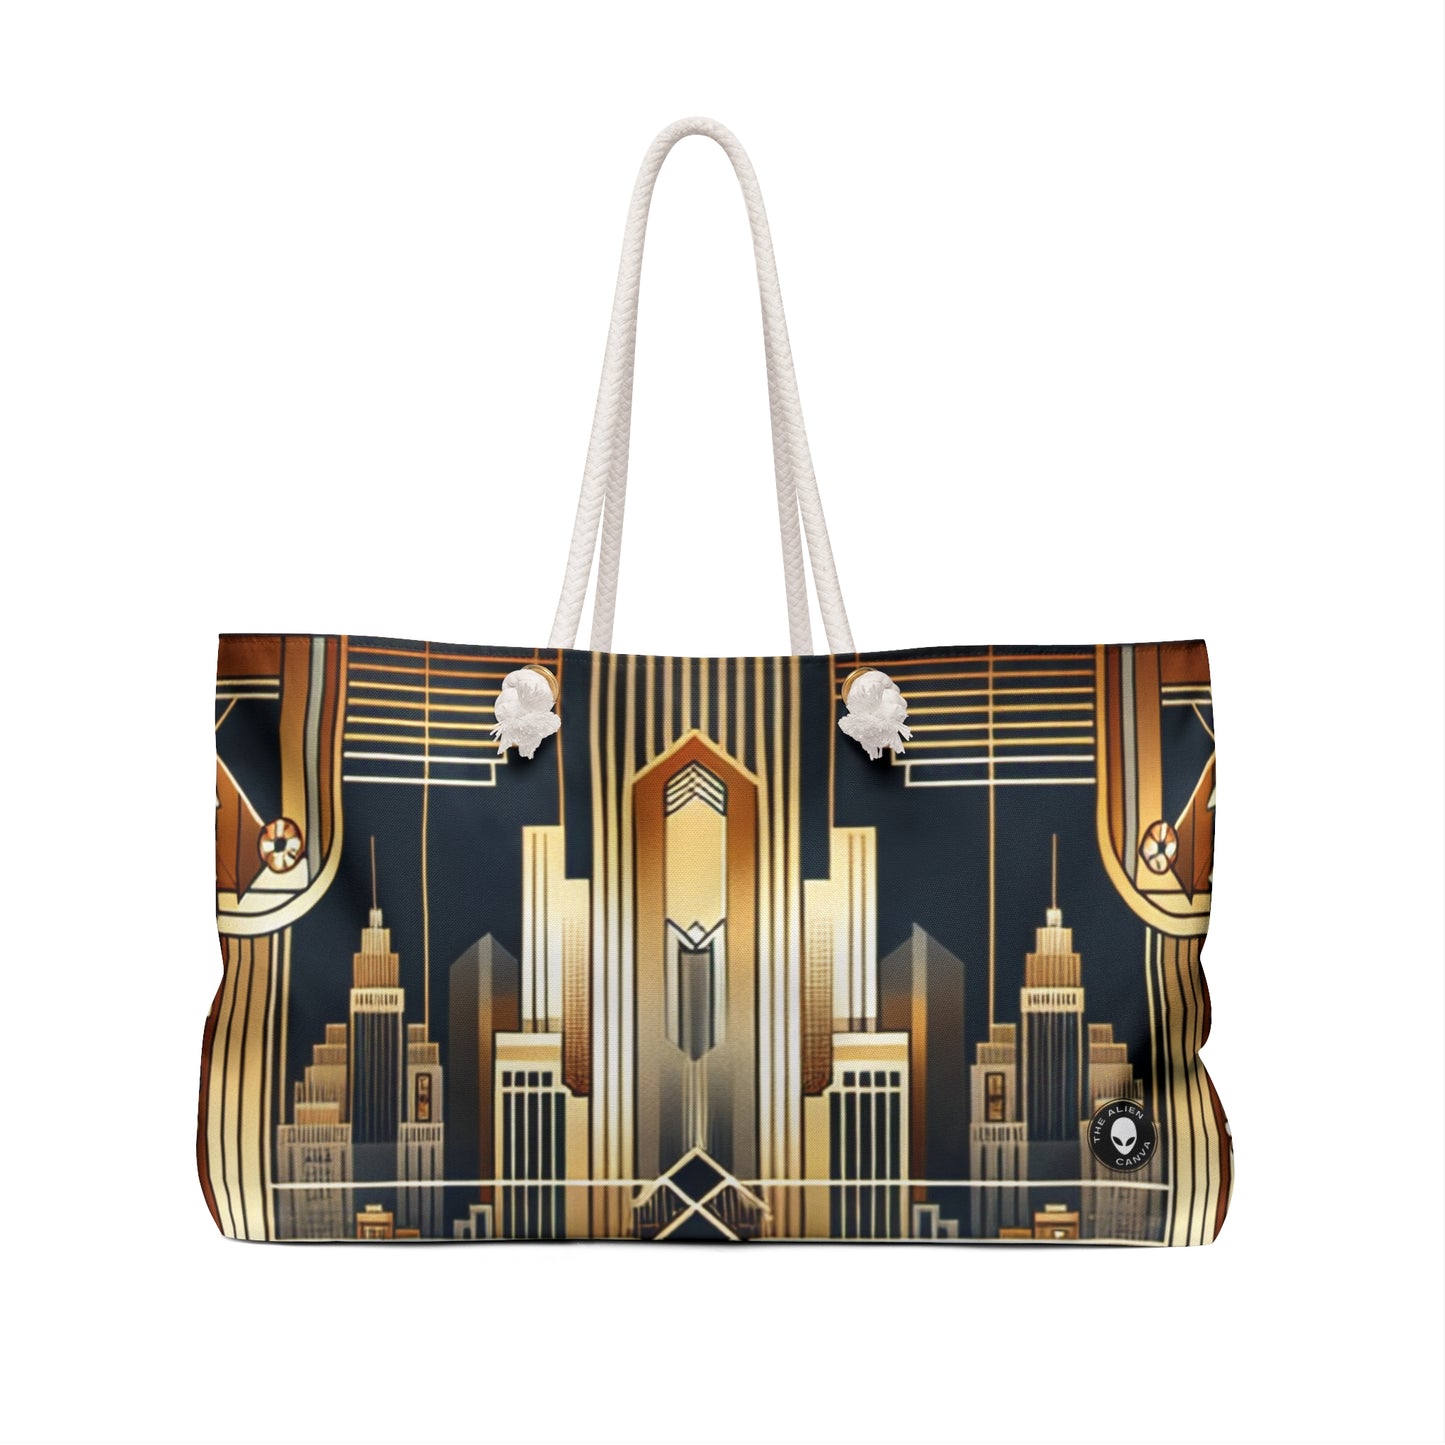 "Luxe Deco: Elegancia artística en el Grand Hotel" - The Alien Weekender Bag Art Deco